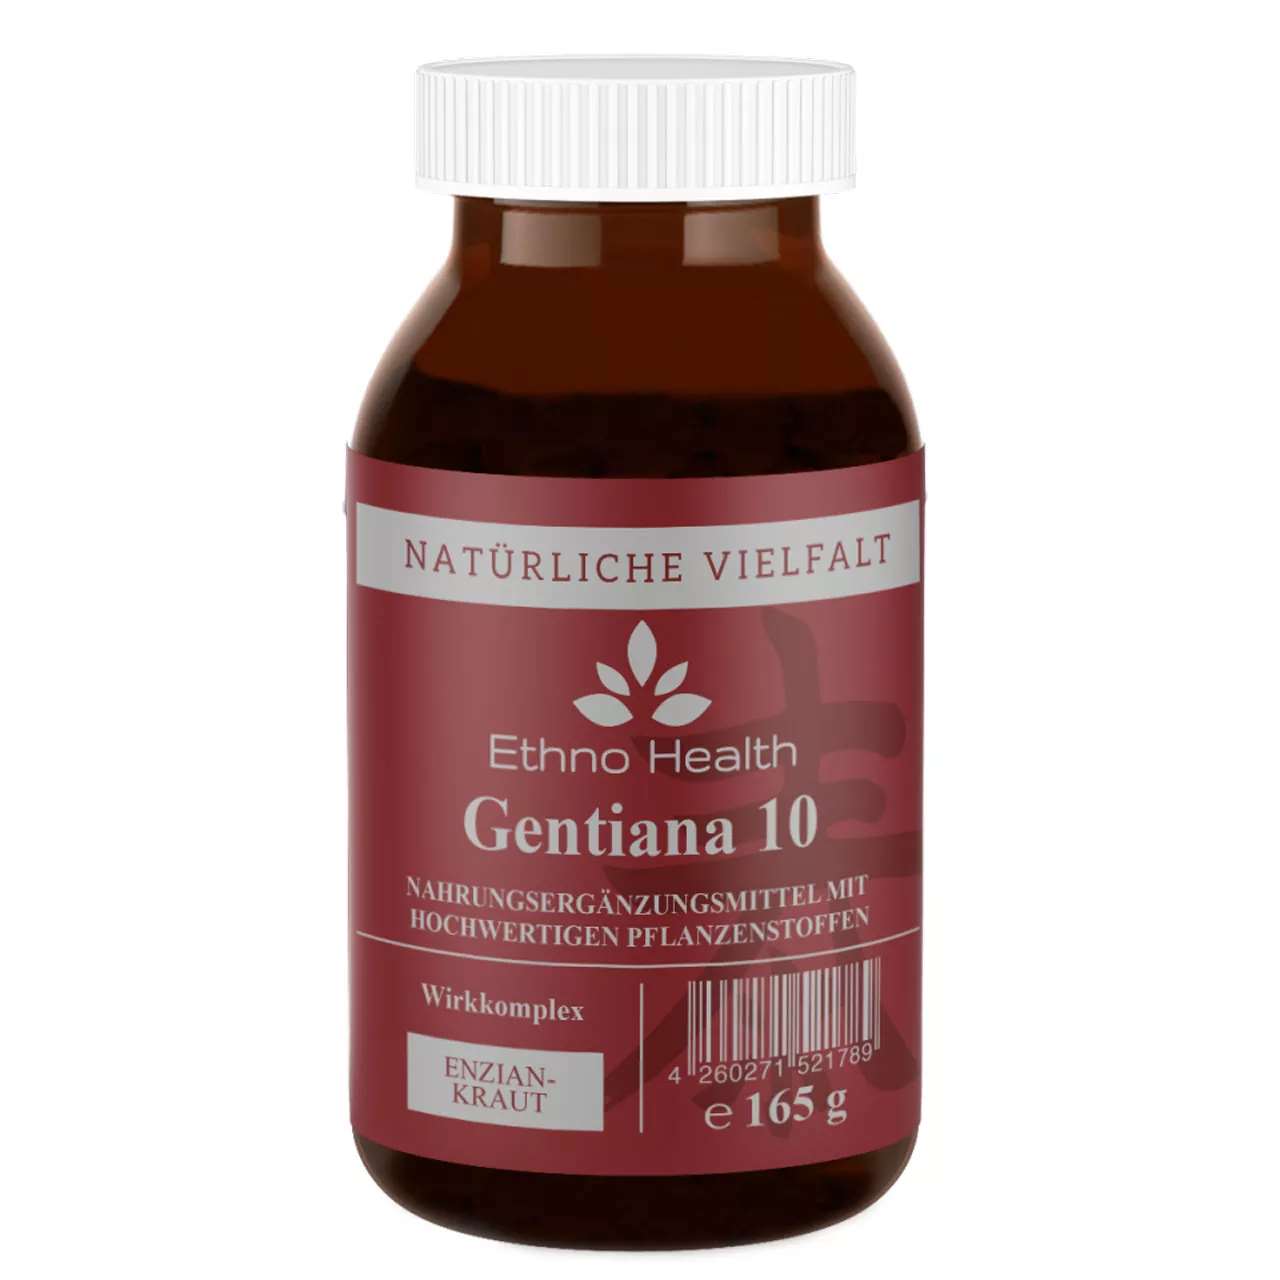 Gentiana 10 Pulver von Ethno Health beinhaltet 165 Gramm